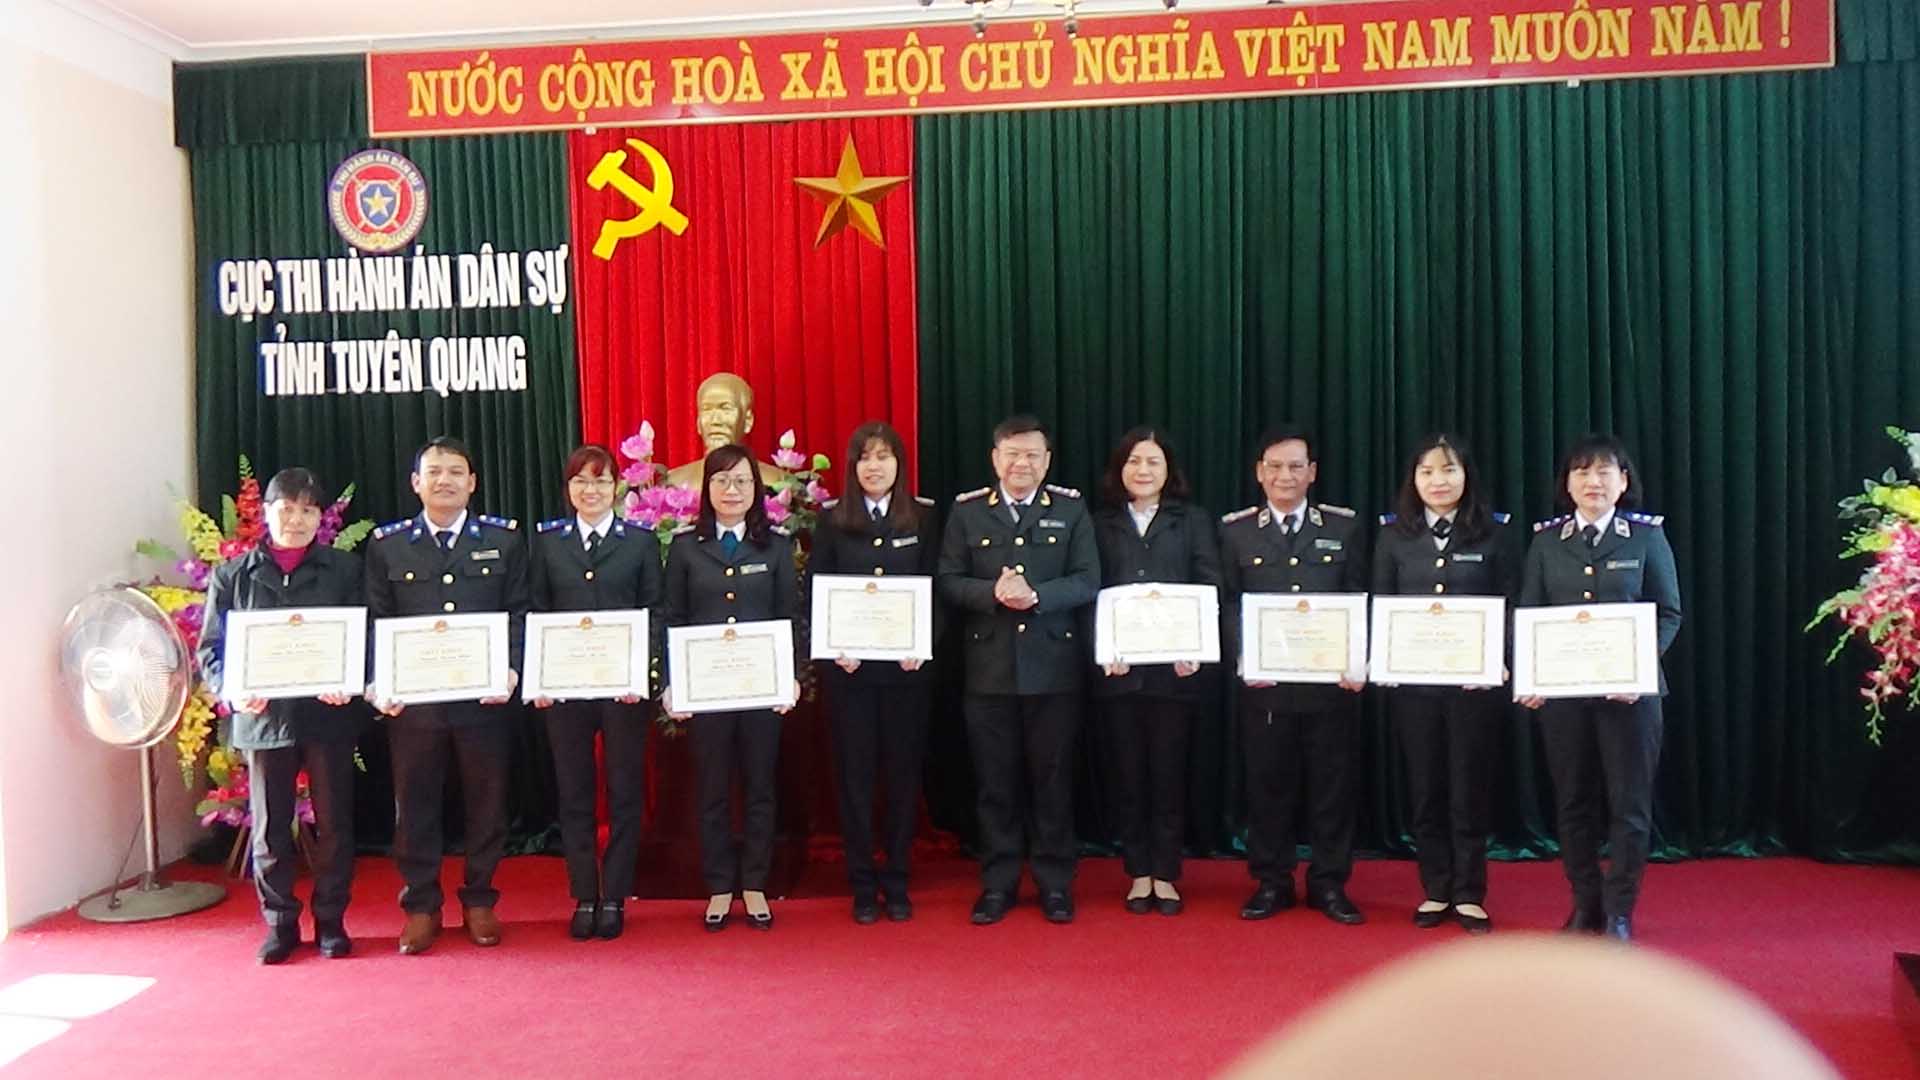 Cục Thi hành án dân sự - Công đoàn Cục Thi hành án dân sự tỉnh Tuyên Quang tổ chức Hội nghị cán bộ, công chức năm 2020.